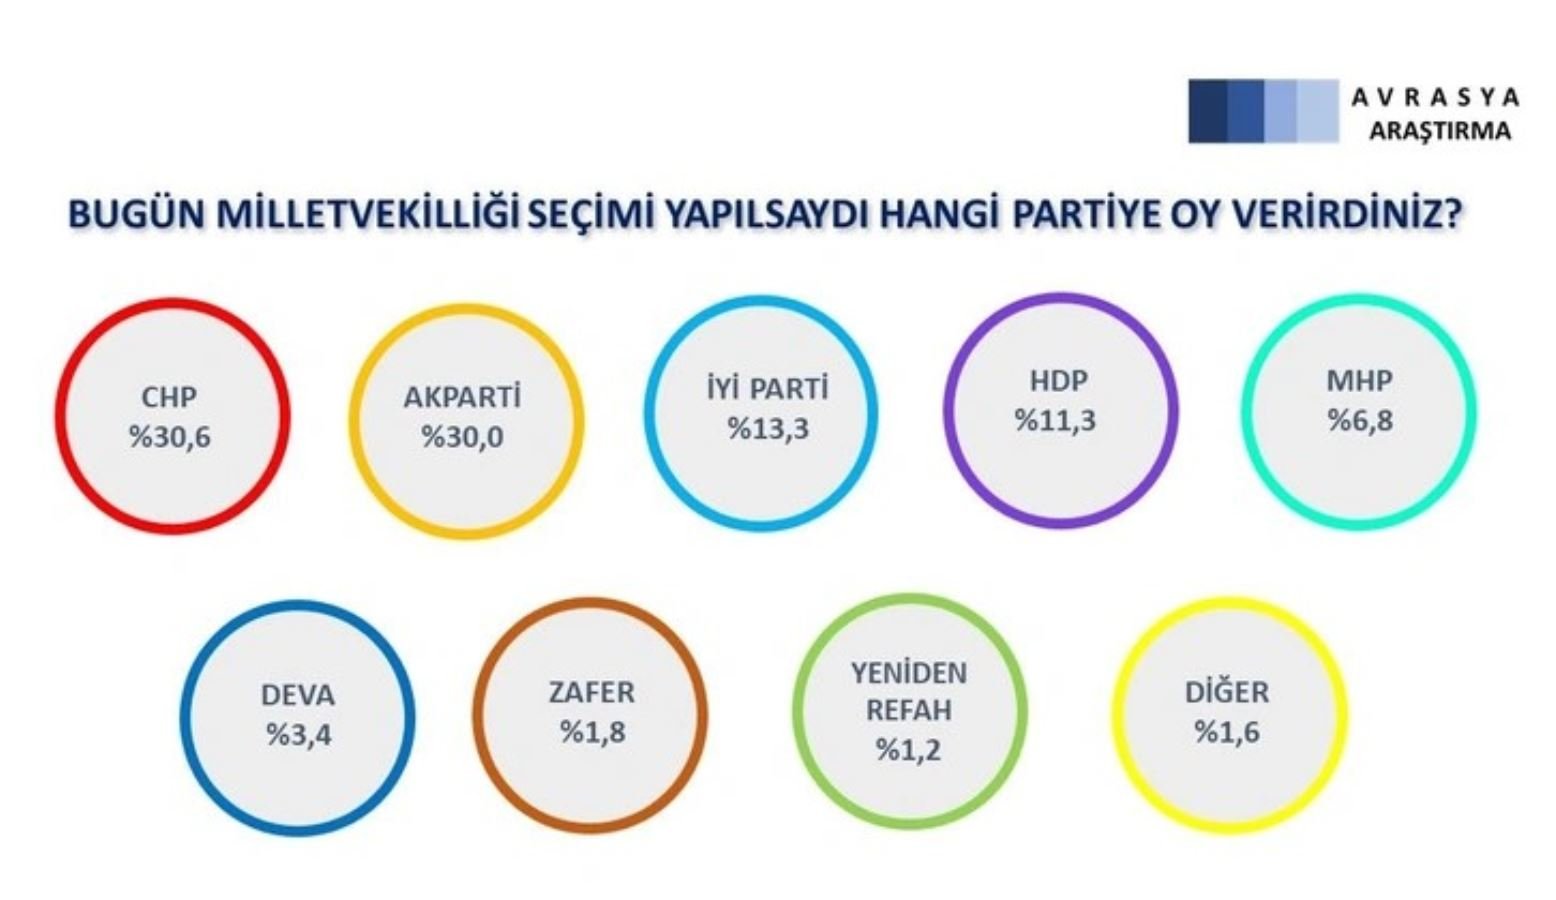 <p><strong>Kararsızlar dağıtıldığında ise tablo şöyle: </strong></p>
<p>CHP: 30,6</p>
<p>AKP: 30,0</p>
<p>İYİ Parti: 13,3</p>
<p>HDP: 11,3</p>
<p>MHP: 6,8</p>
<p>Deva Partisi: 3,4</p>
<p>Zafer Partisi: 1,8</p>
<p>Yeniden Refah Partisi: 1,2</p>
<p>Diğer: 1,6</p>